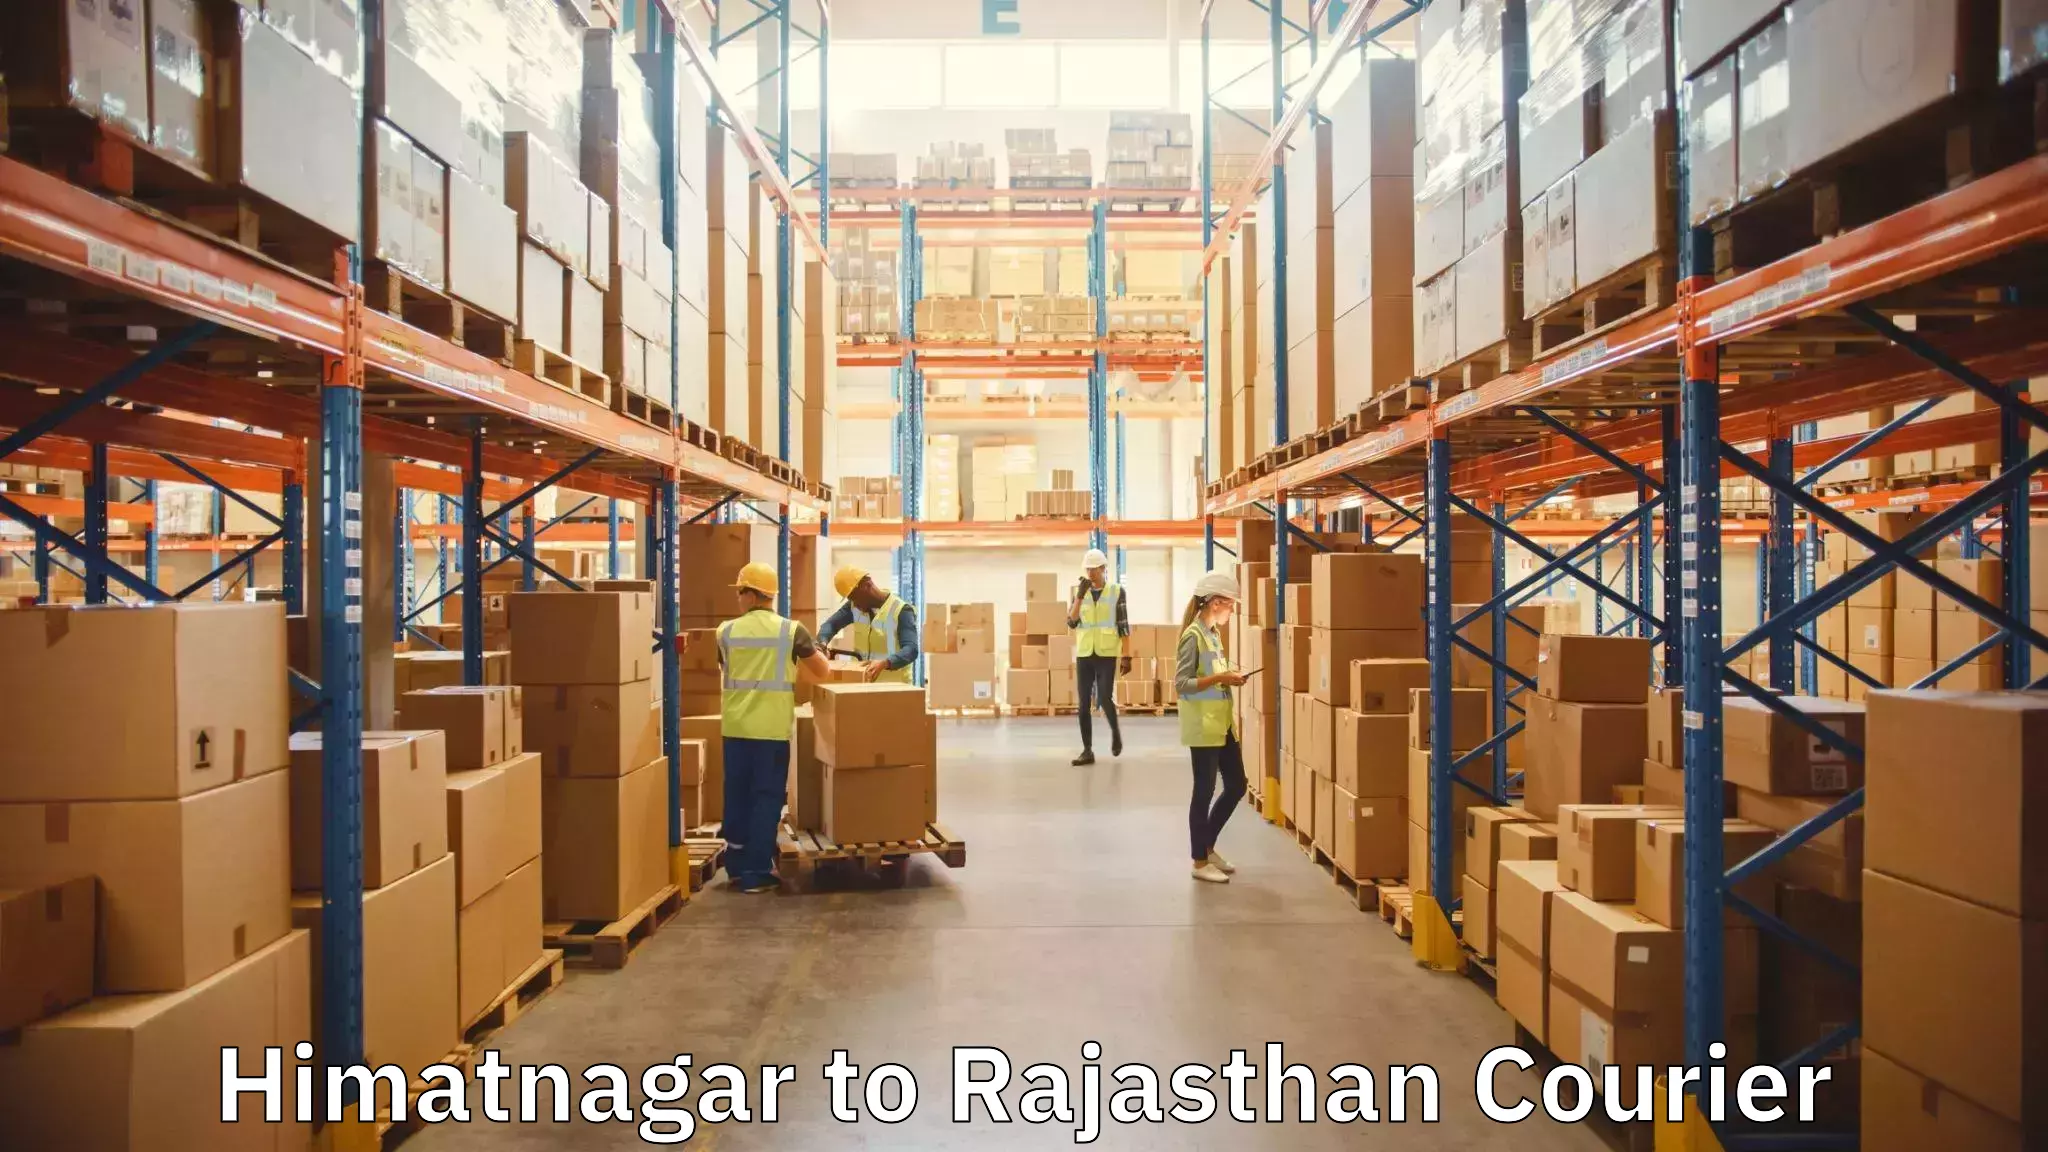 Furniture moving plans Himatnagar to Rajasthan